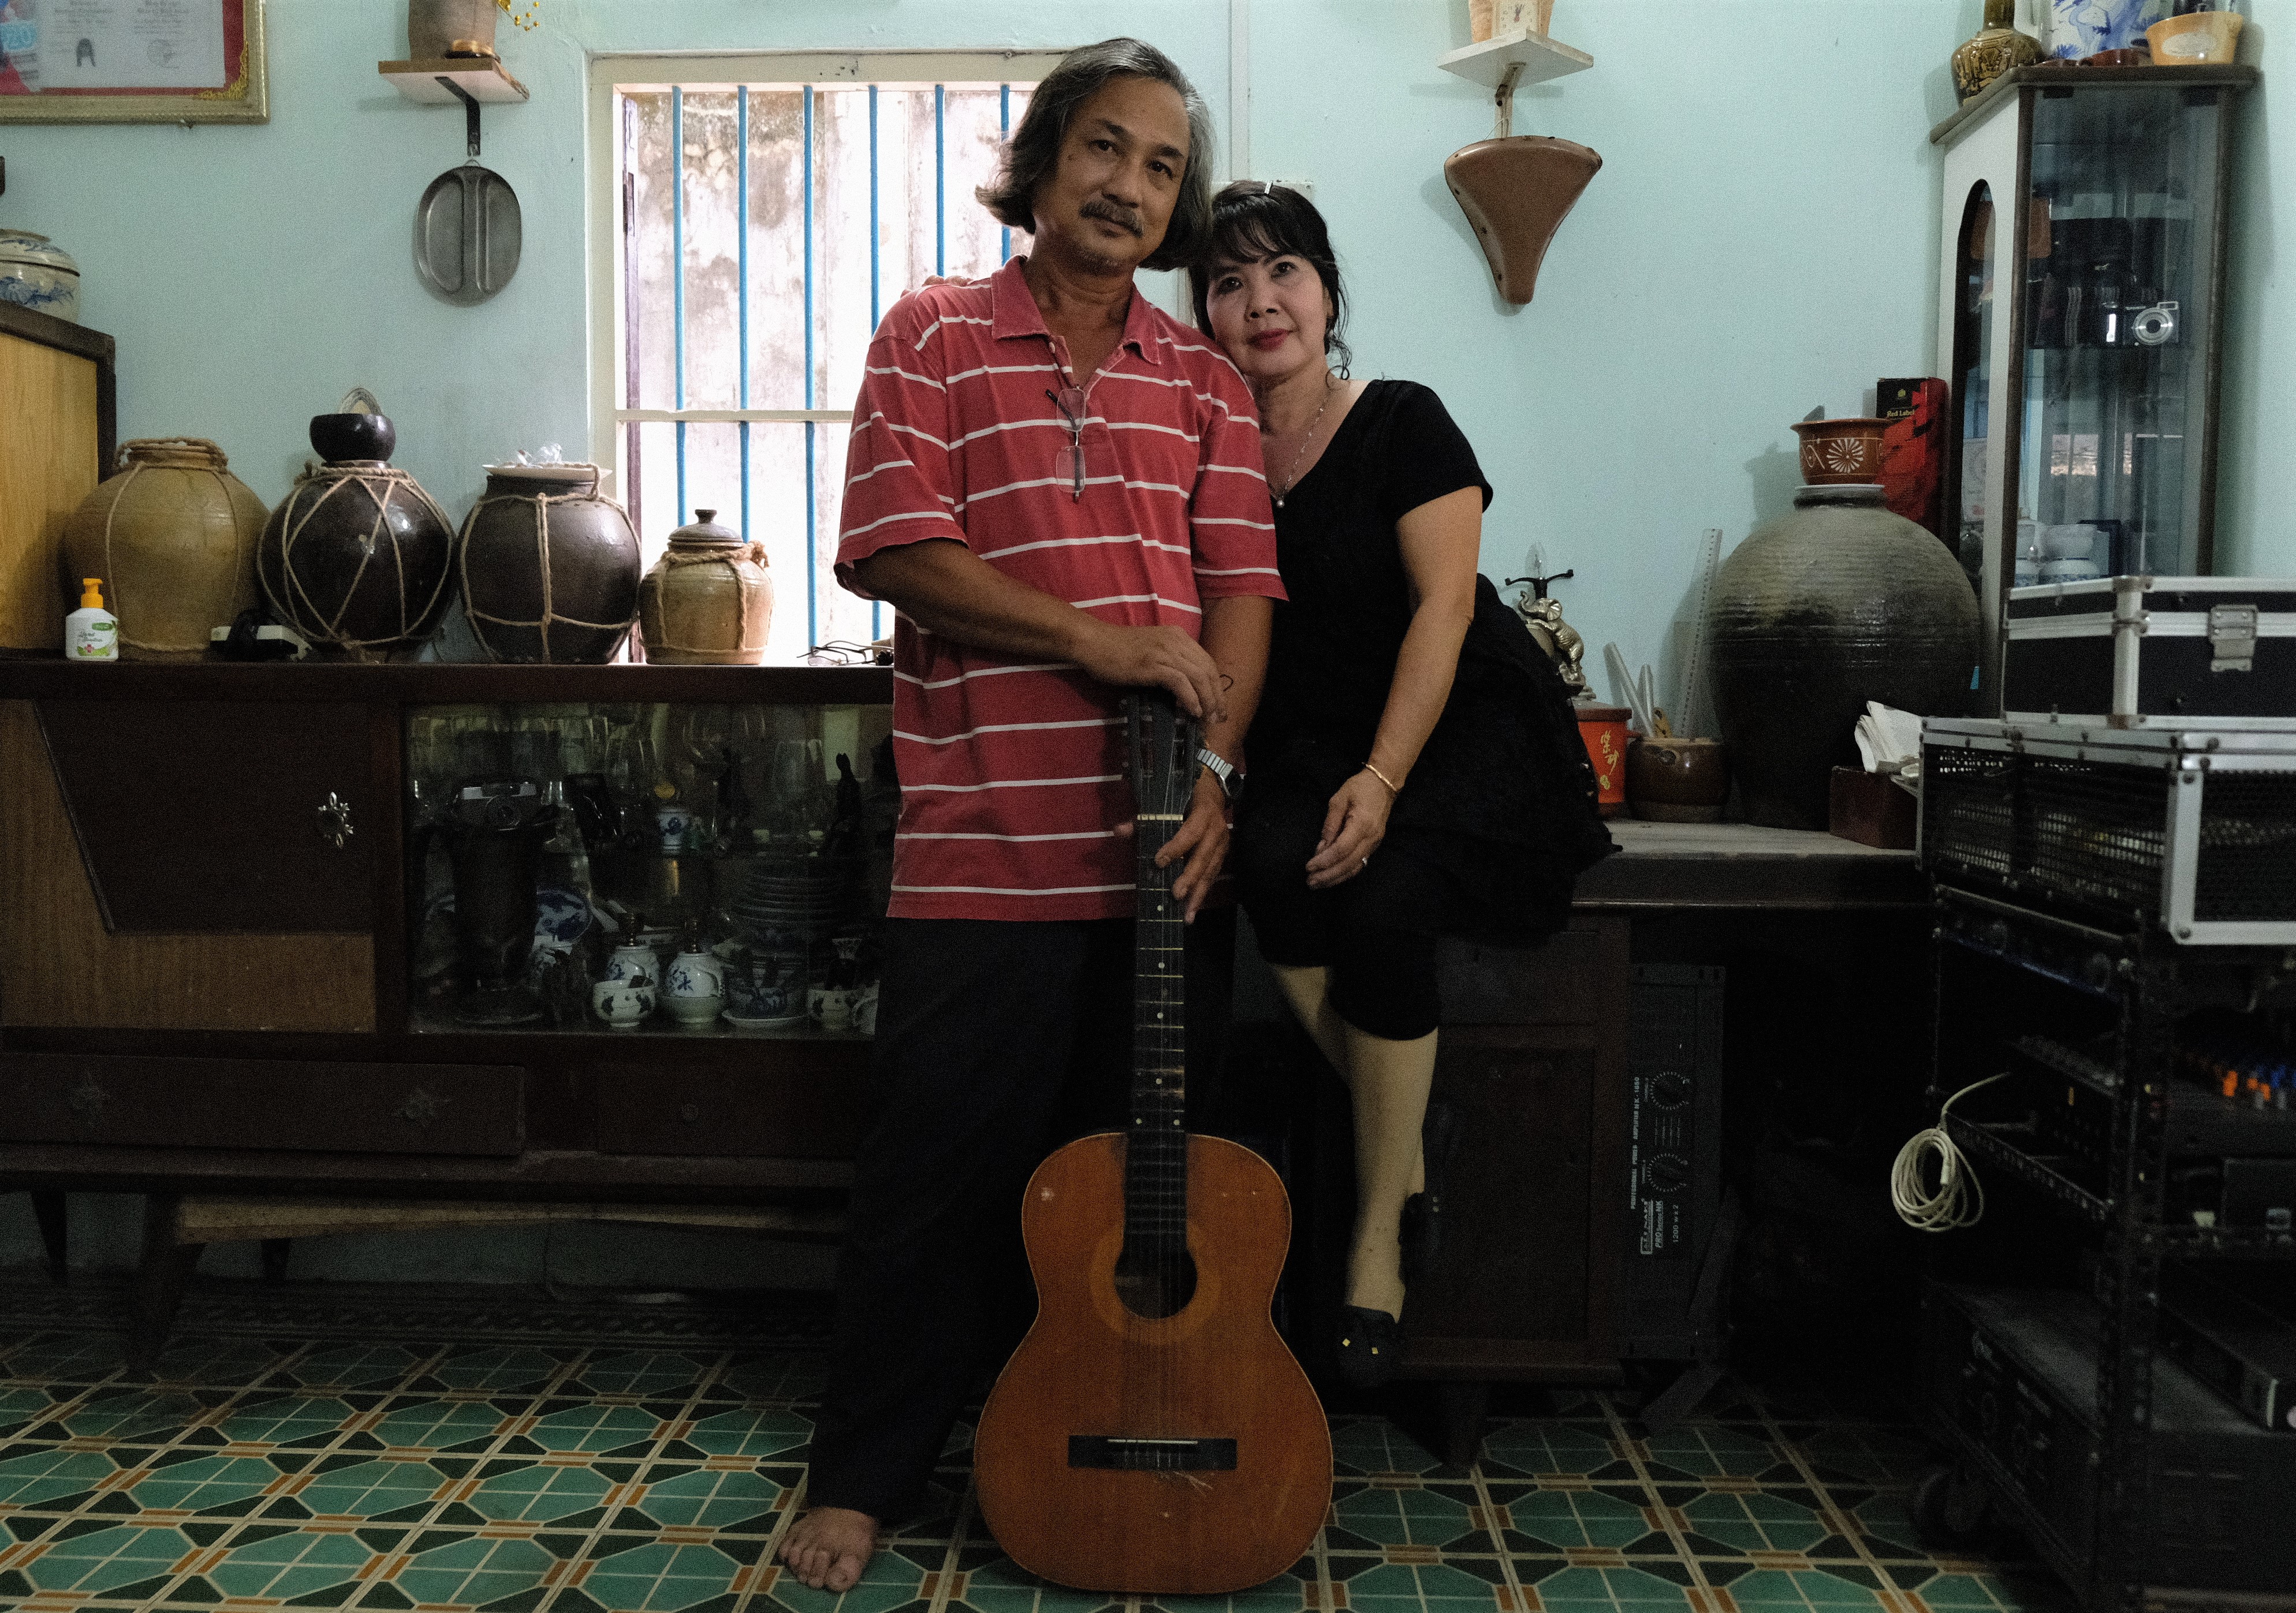 Quán đá đậu gần 30 năm được phục vụ bởi đôi vợ chồng yêu nhạc bolero